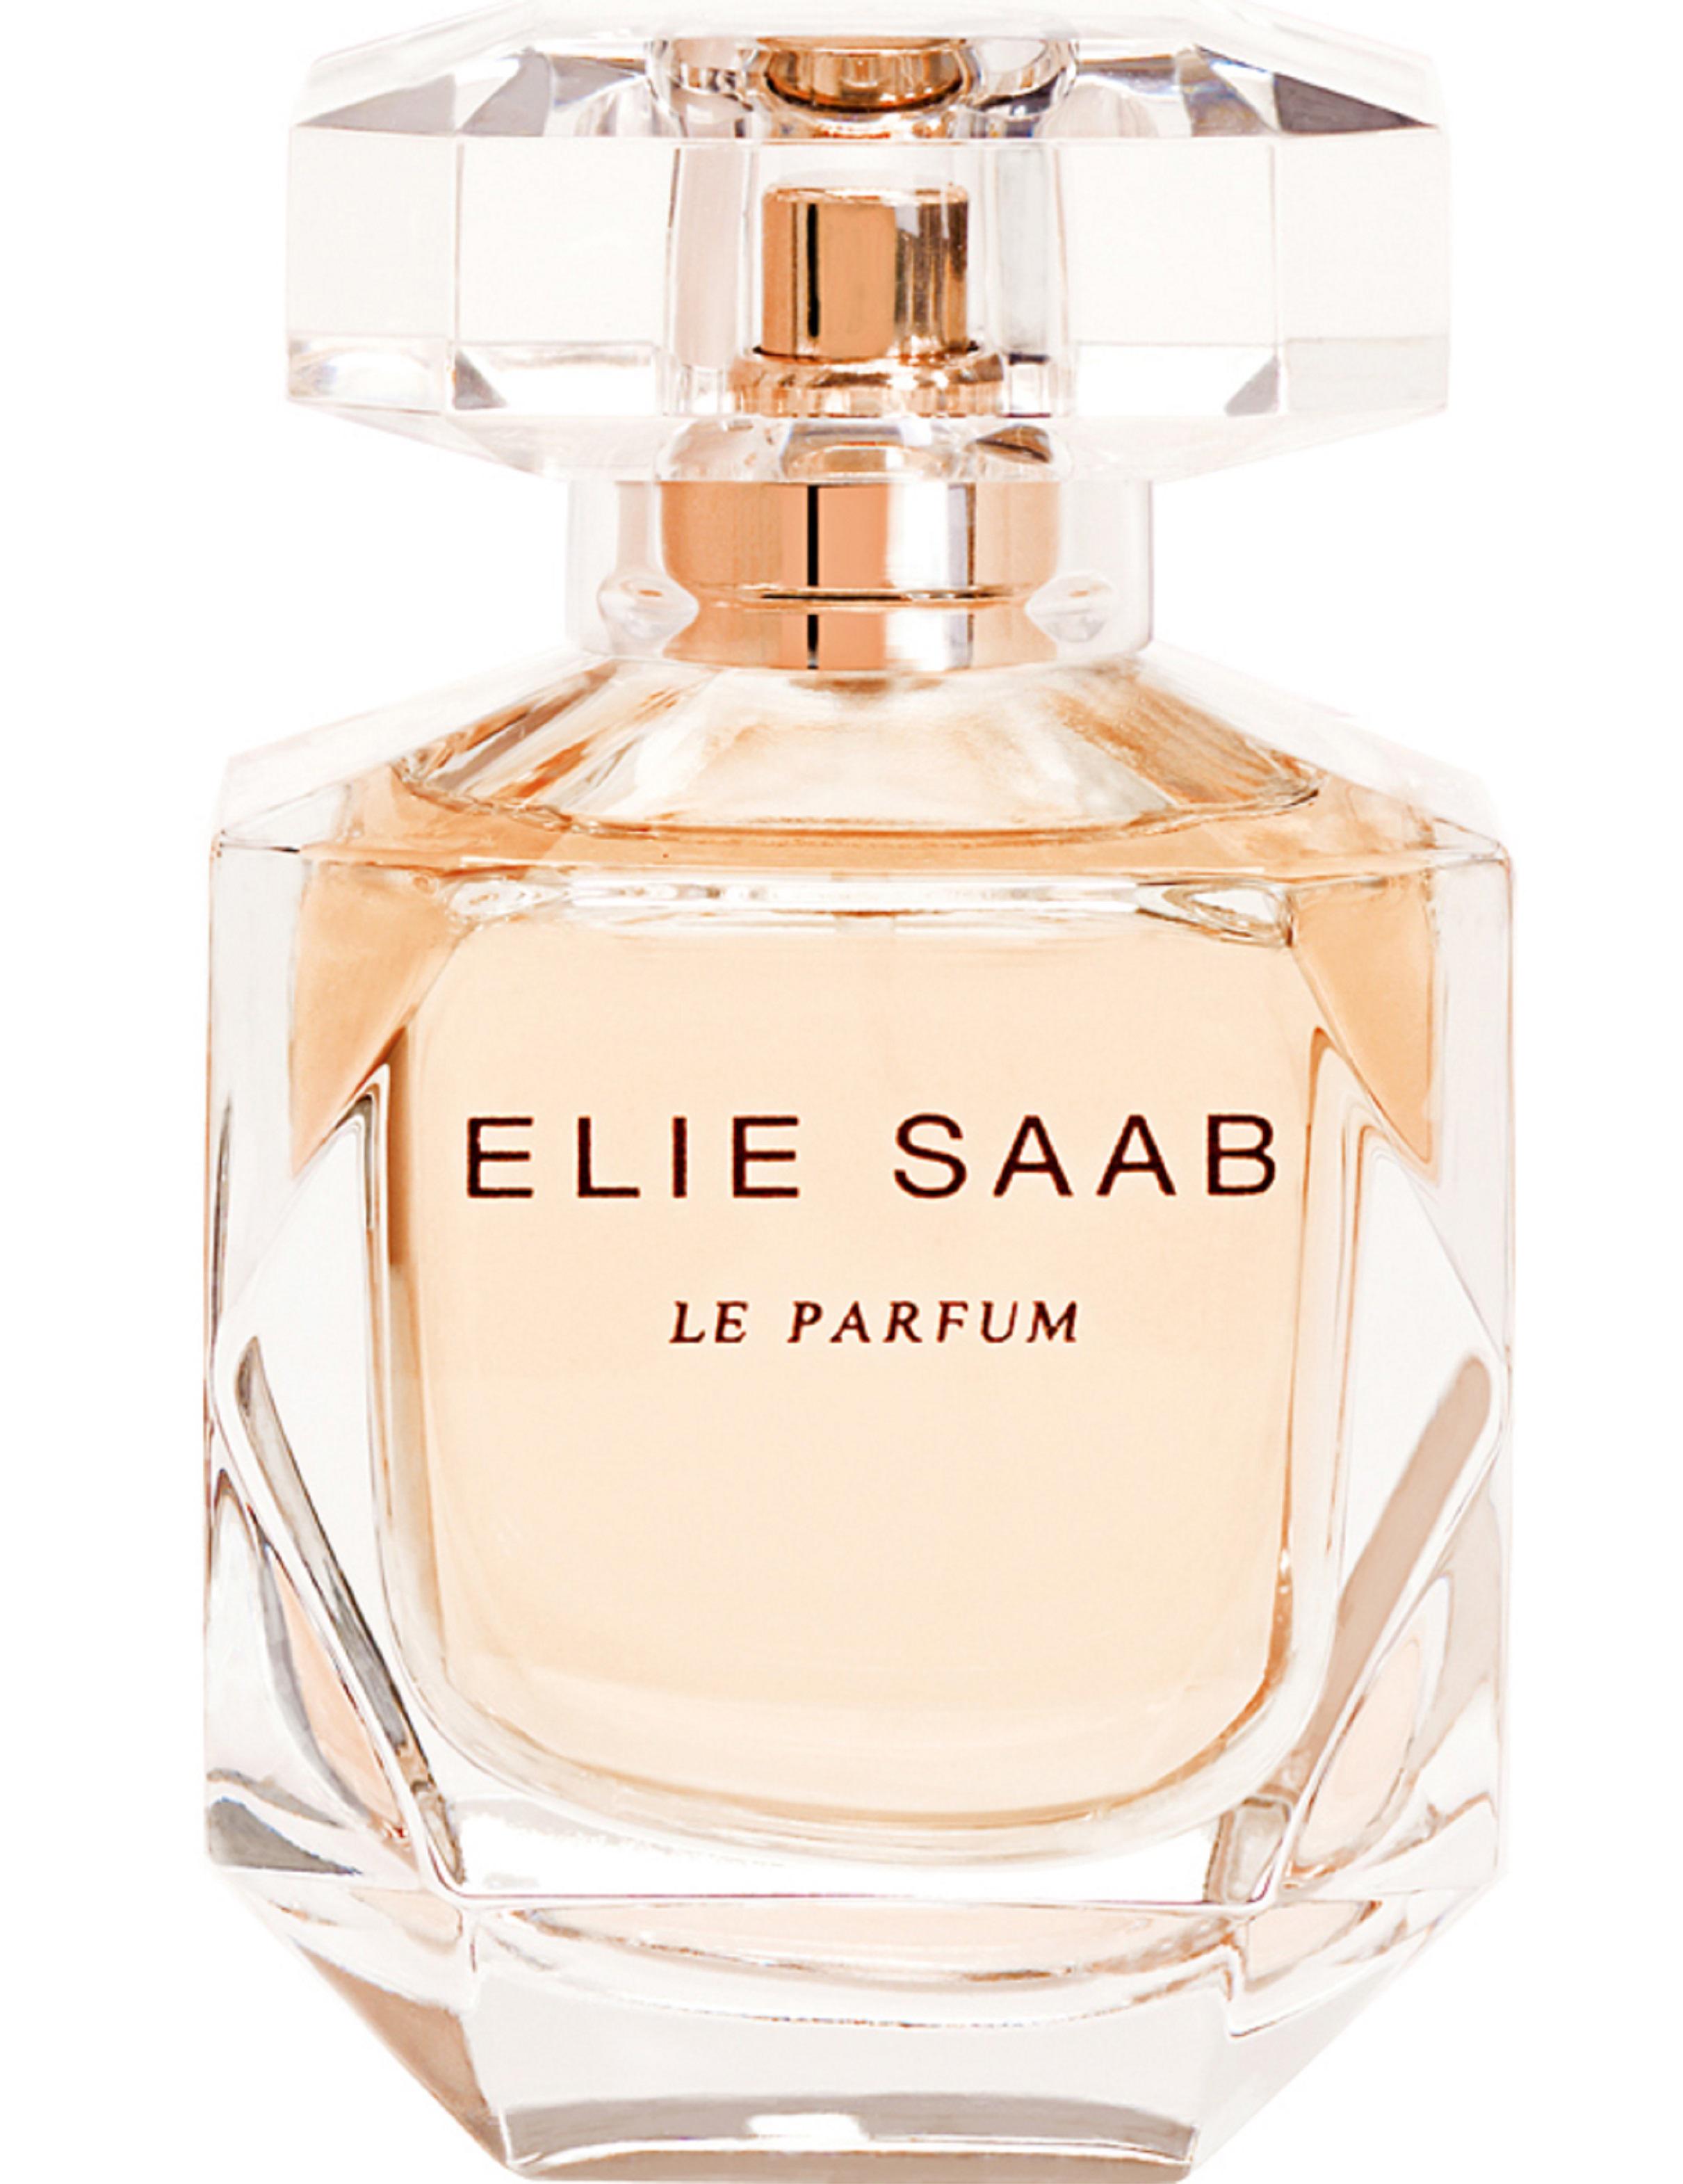 L'eau de parfum di 'Elie Saab Le Parfum', al centro della composizione le assolute di gelsomino glandiforum e sambac si accompagnano a un cuore di patchouli purissimo.
